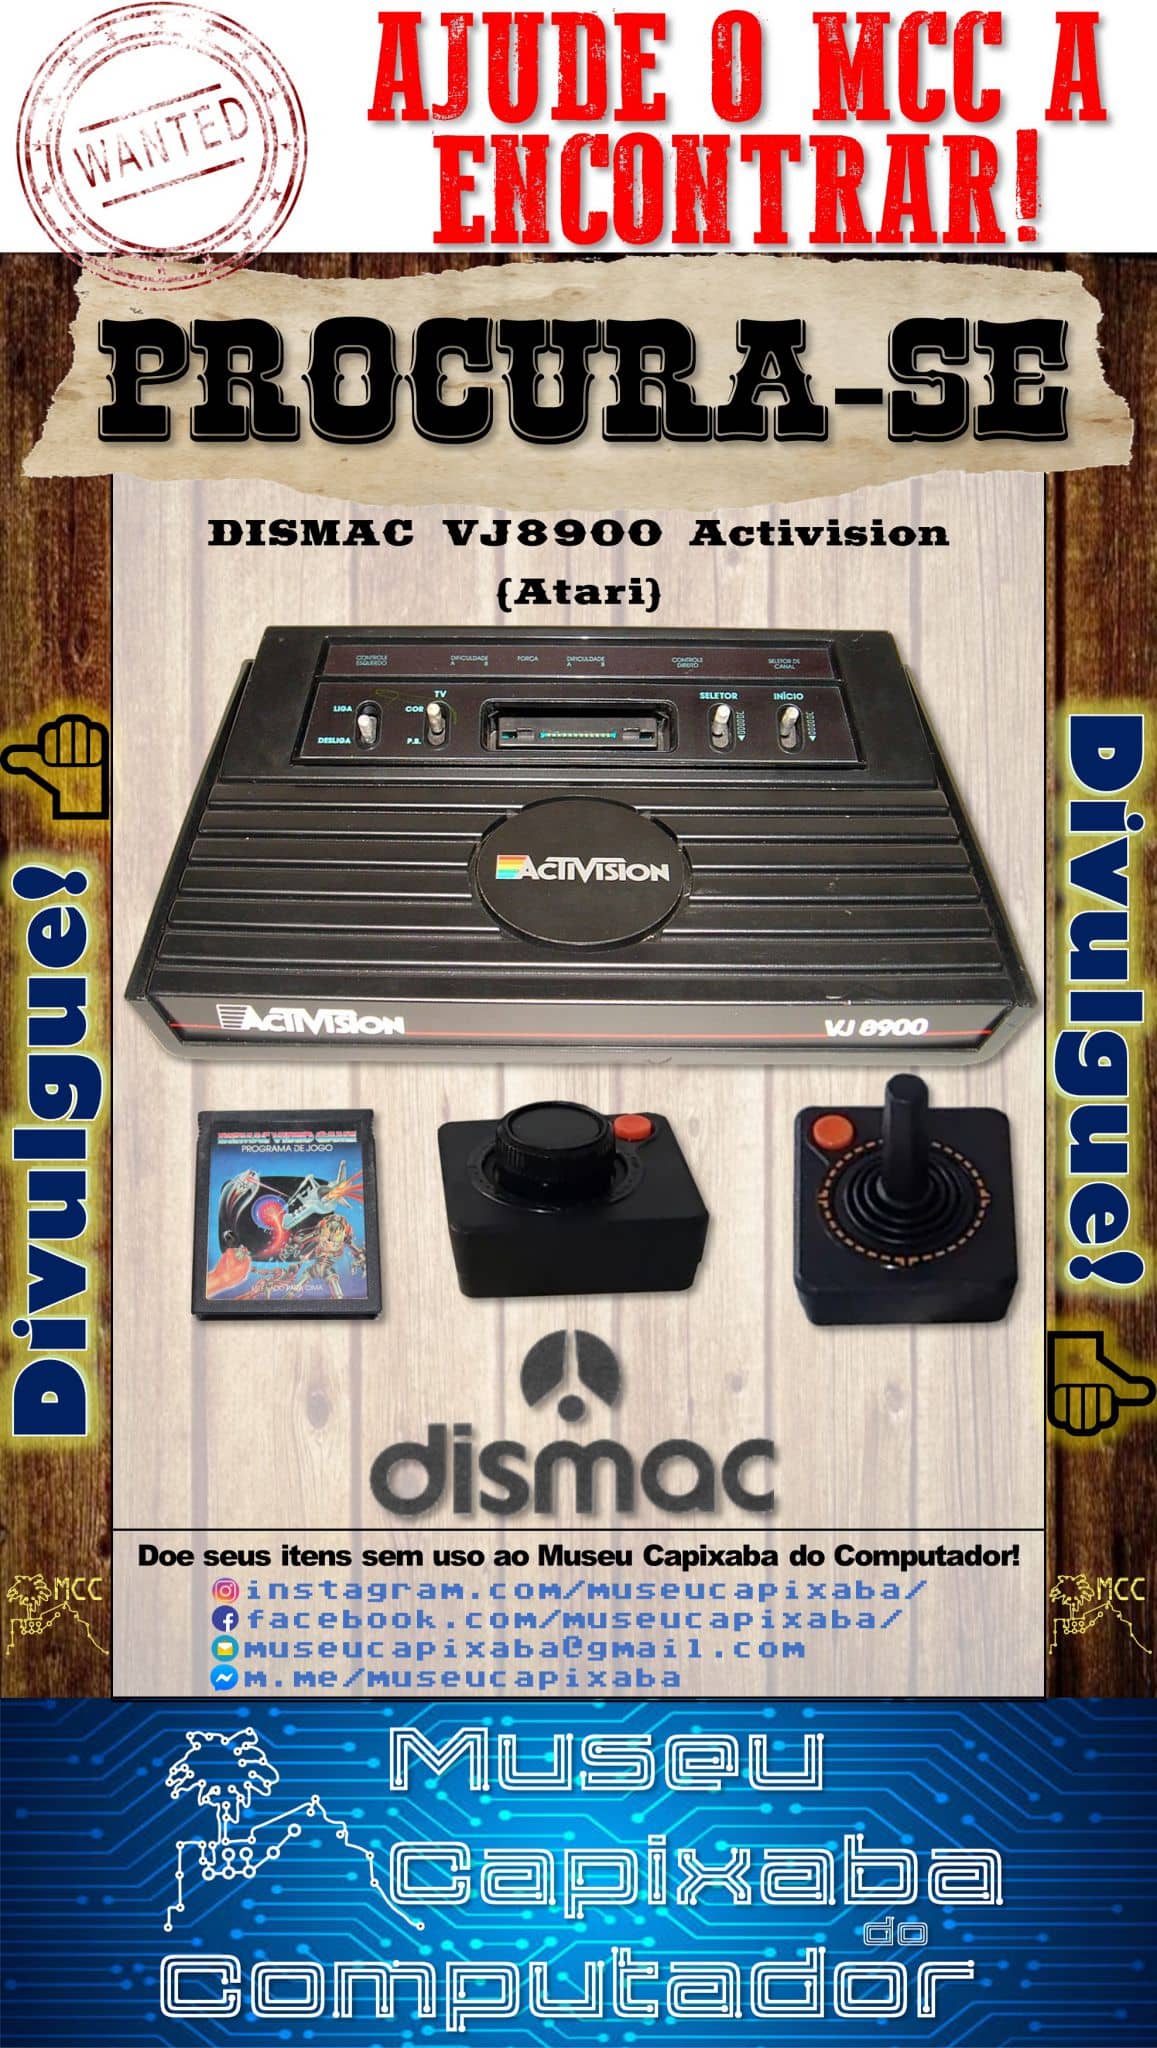 Dismac VJ 8900 Actvision